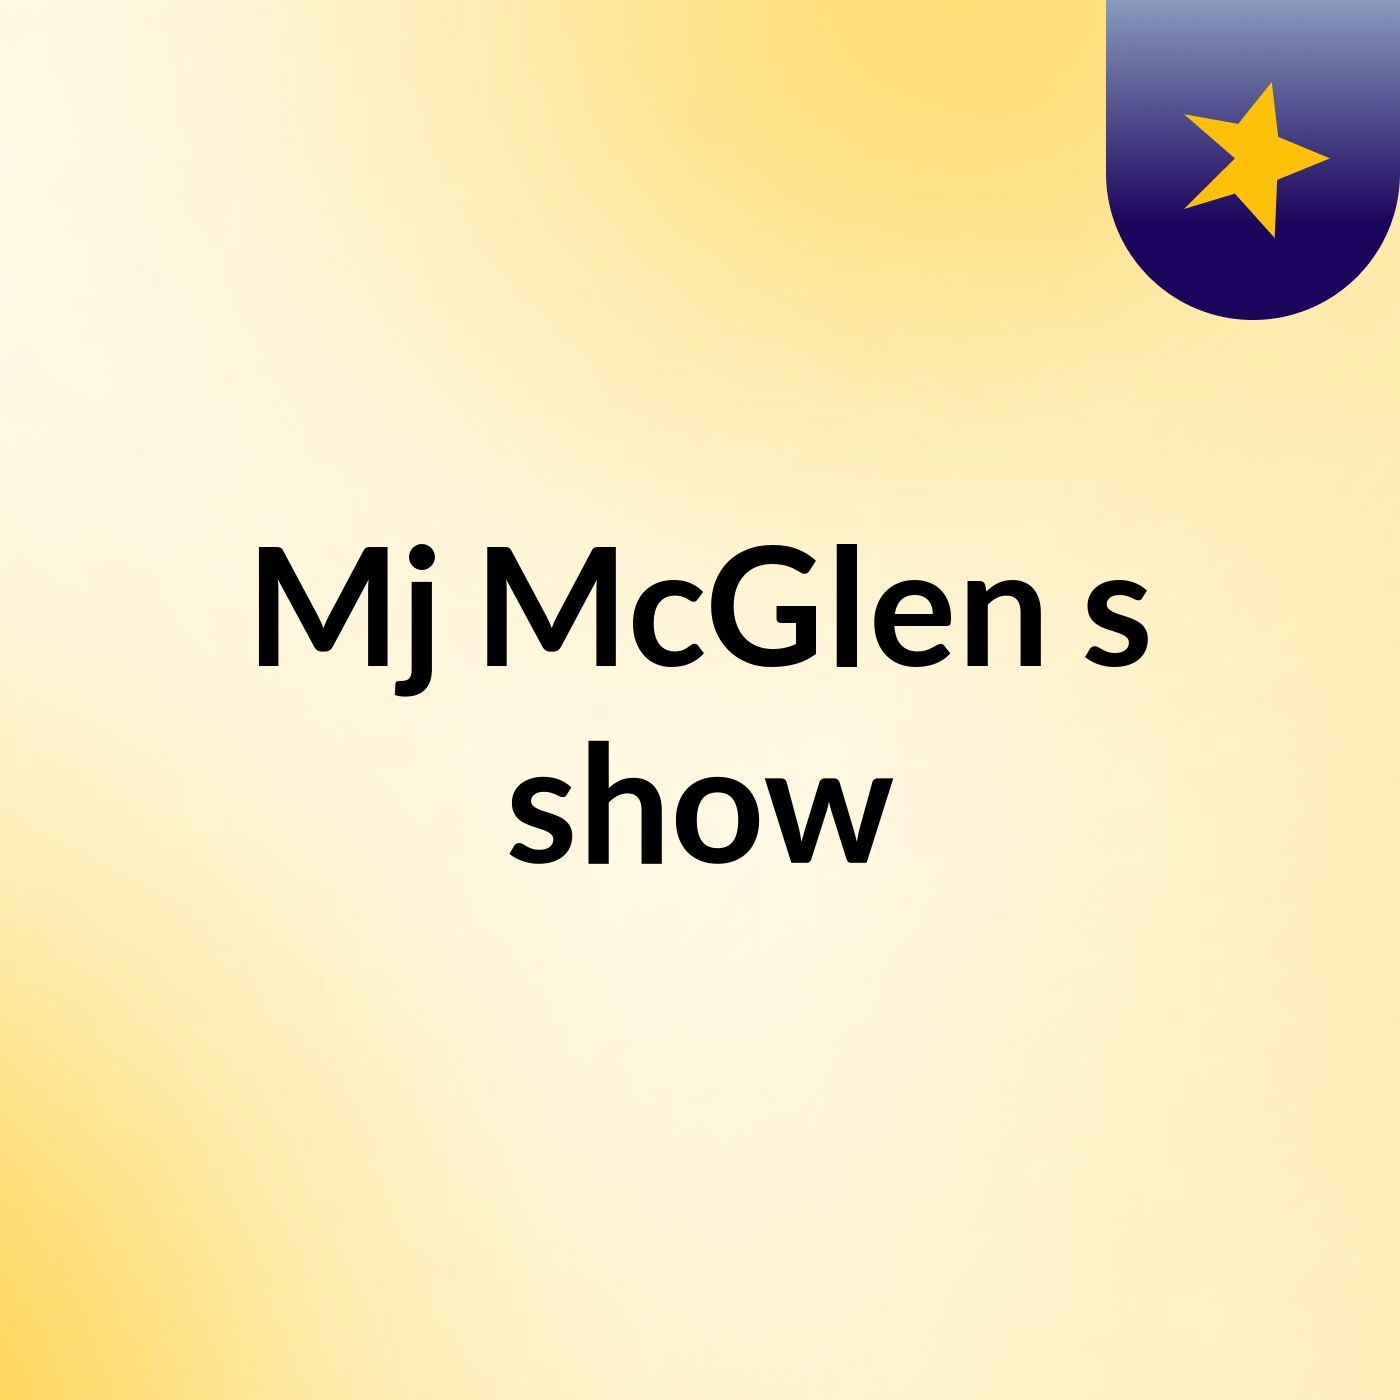 Episode 7 - Mj McGlen's show